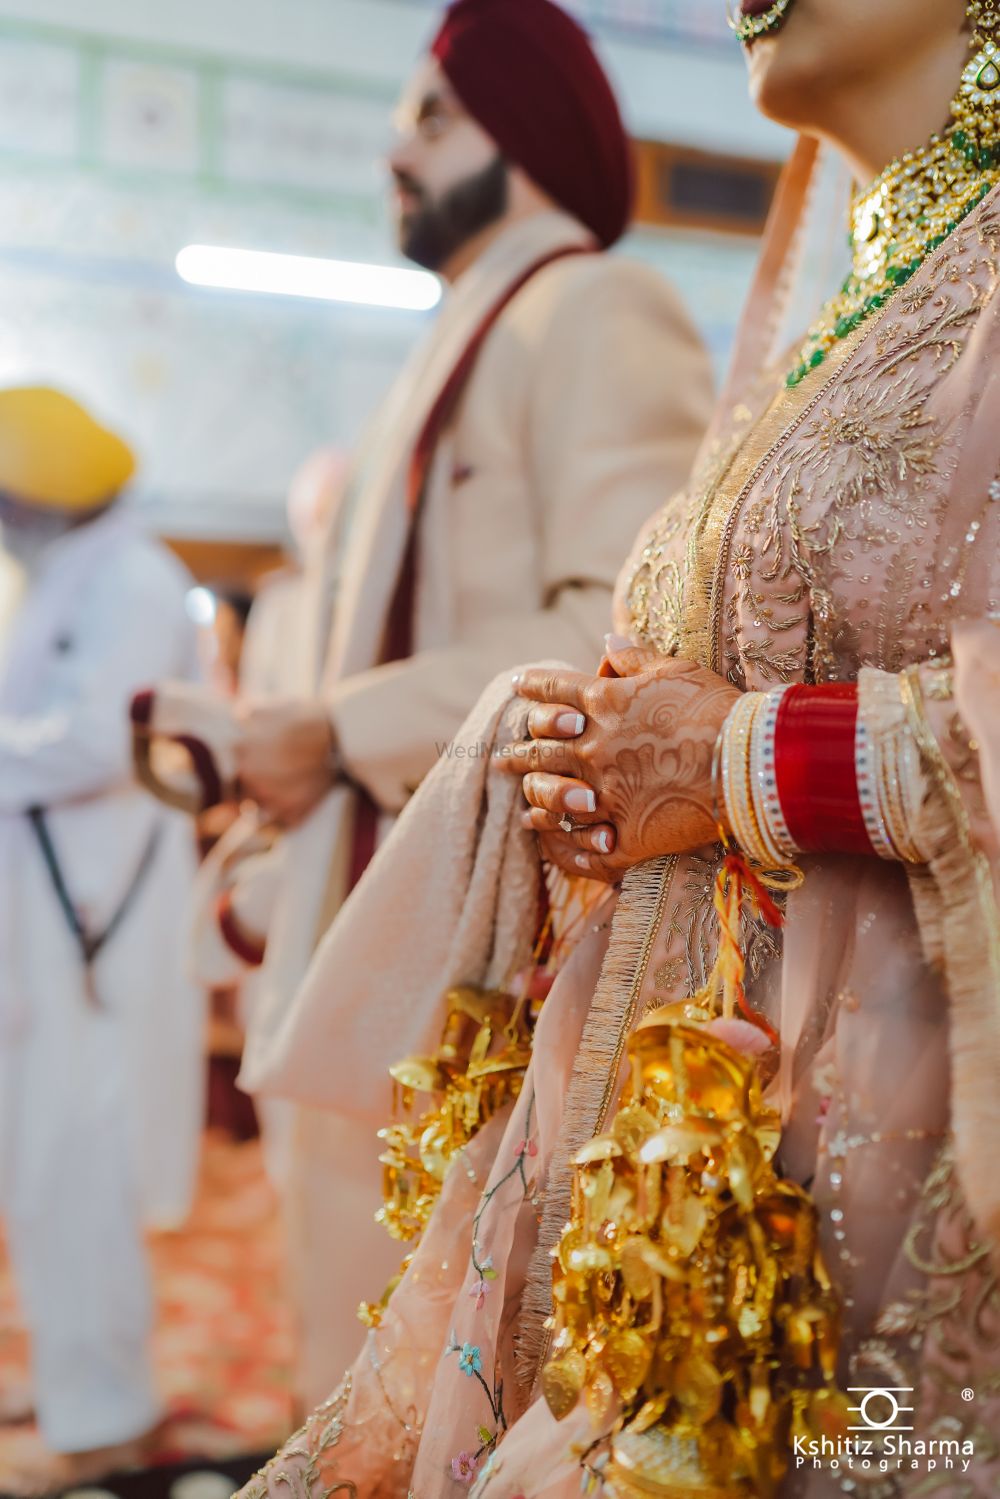 Photo From Wedding: Angad & Sanjna - By Kshitiz Sharma Photography